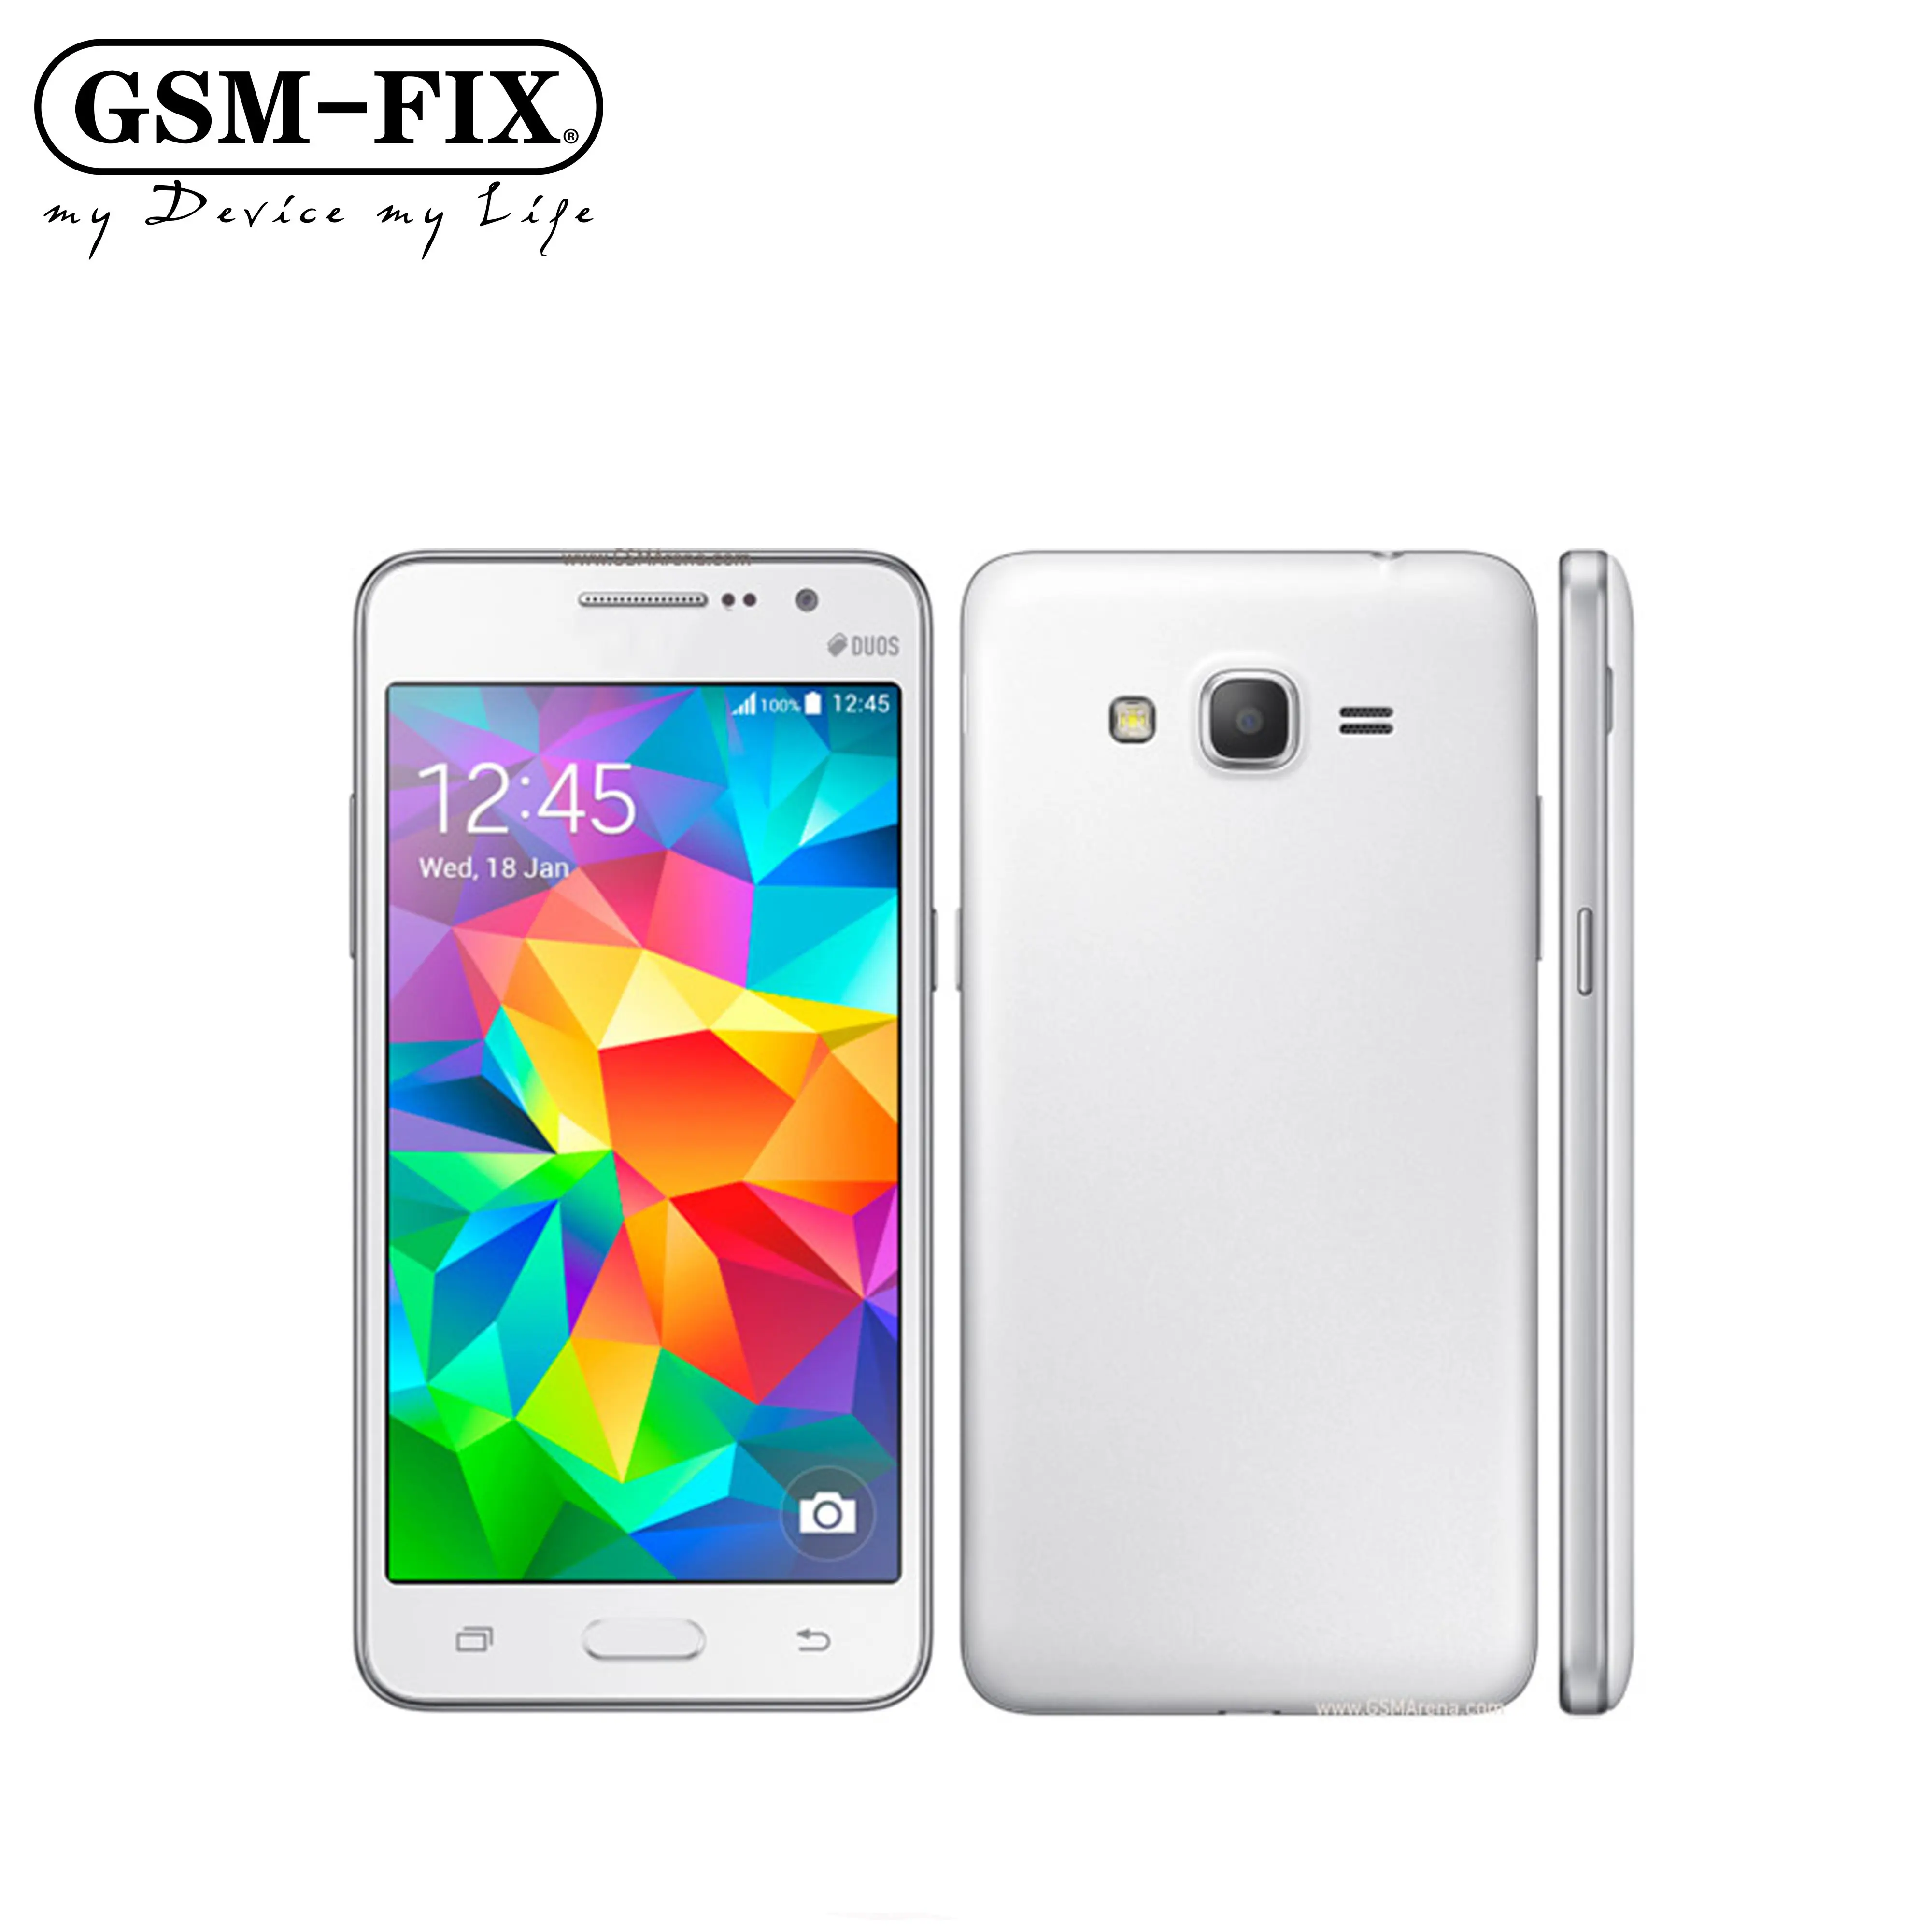 GSM-FIX Đã Mở Khóa Chính Hãng Cho Samsung Galaxy Grand Prime G530 G530H Điện Thoại Di Động Ouad Core Dual Sim 1GB RAM 5.0 Inch Màn Hình Cảm Ứng